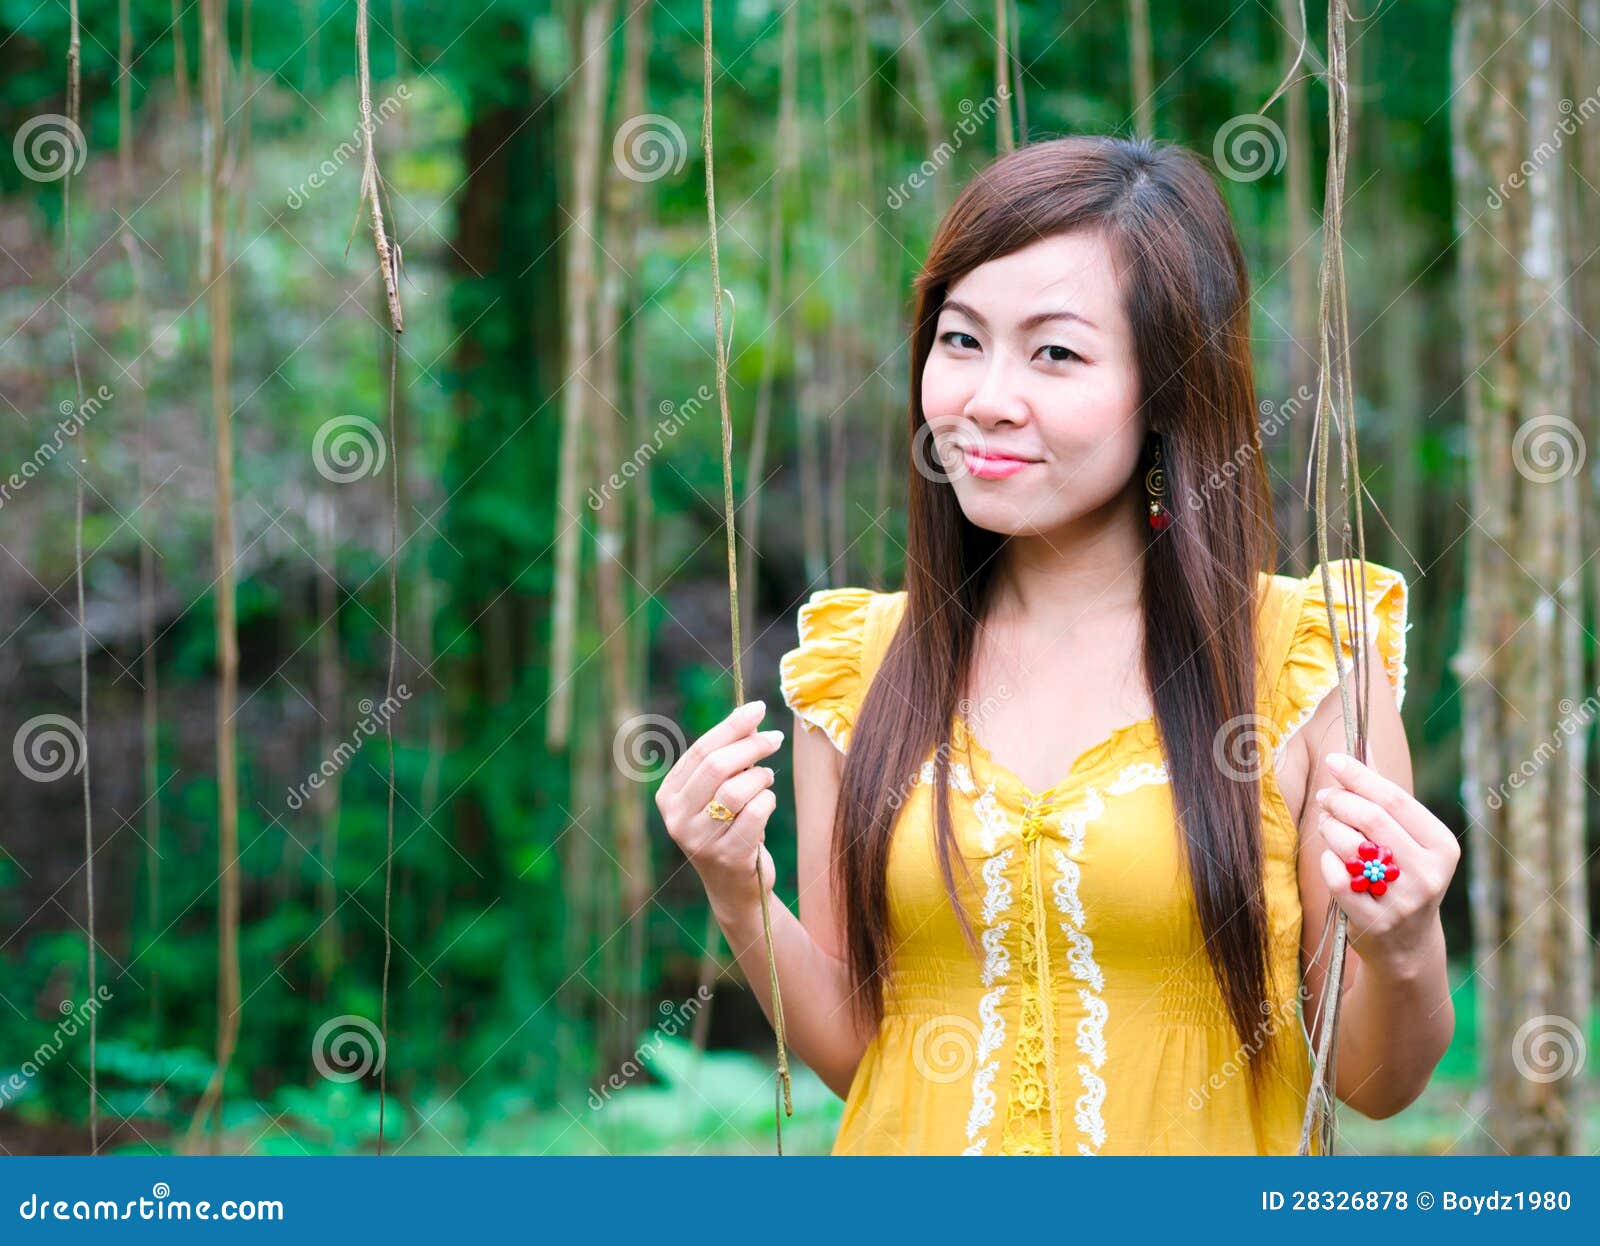 Ritratto Delle Donne Asiatiche Fotografia Stock - Immagine ...